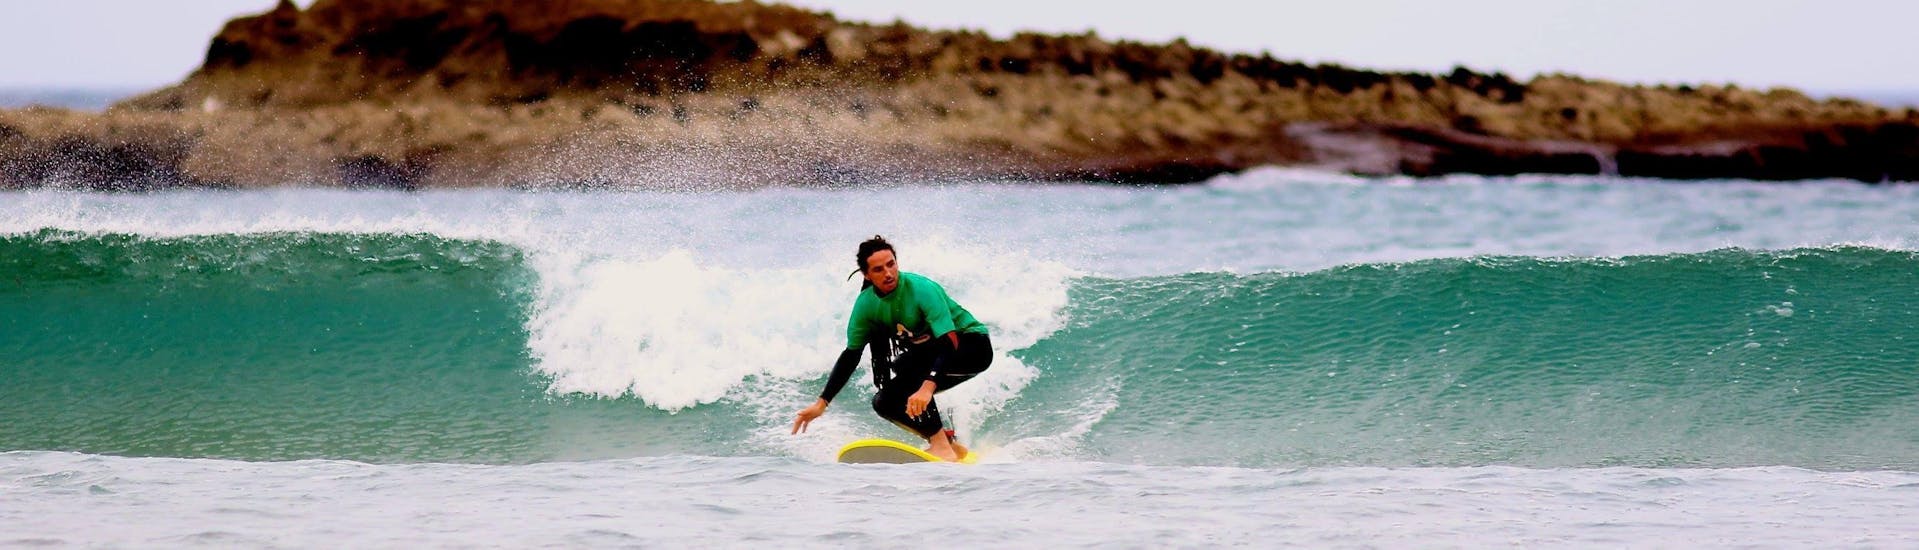 Curso de Surf Privado en Carrapateira a partir de 6 años para todos los niveles.